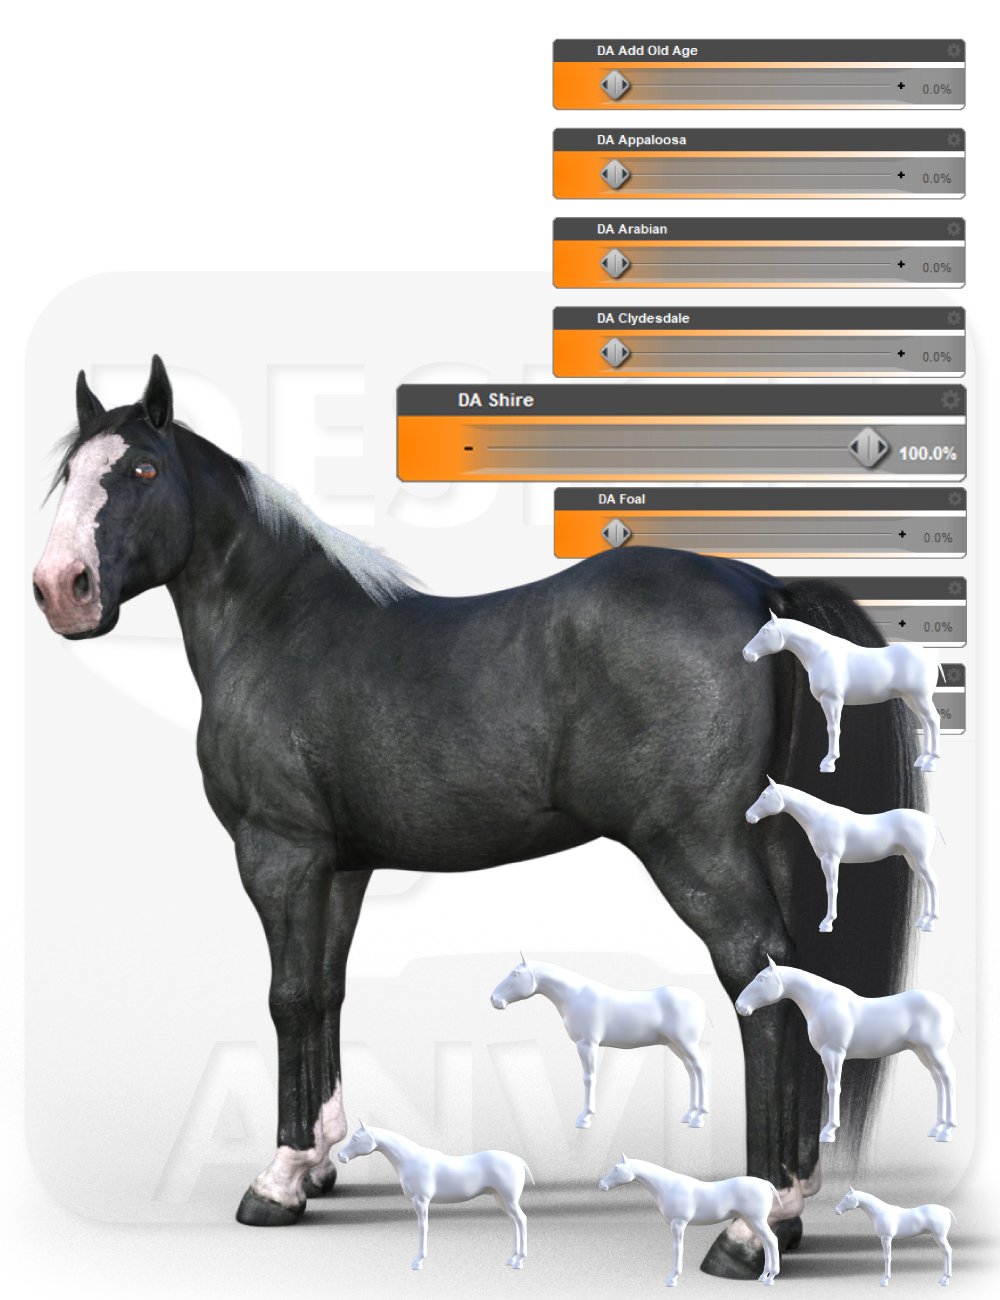 DA Ultimate Shape pack for Horse 3 - Breeds by: Design Anvil, 3D Models by Daz 3D